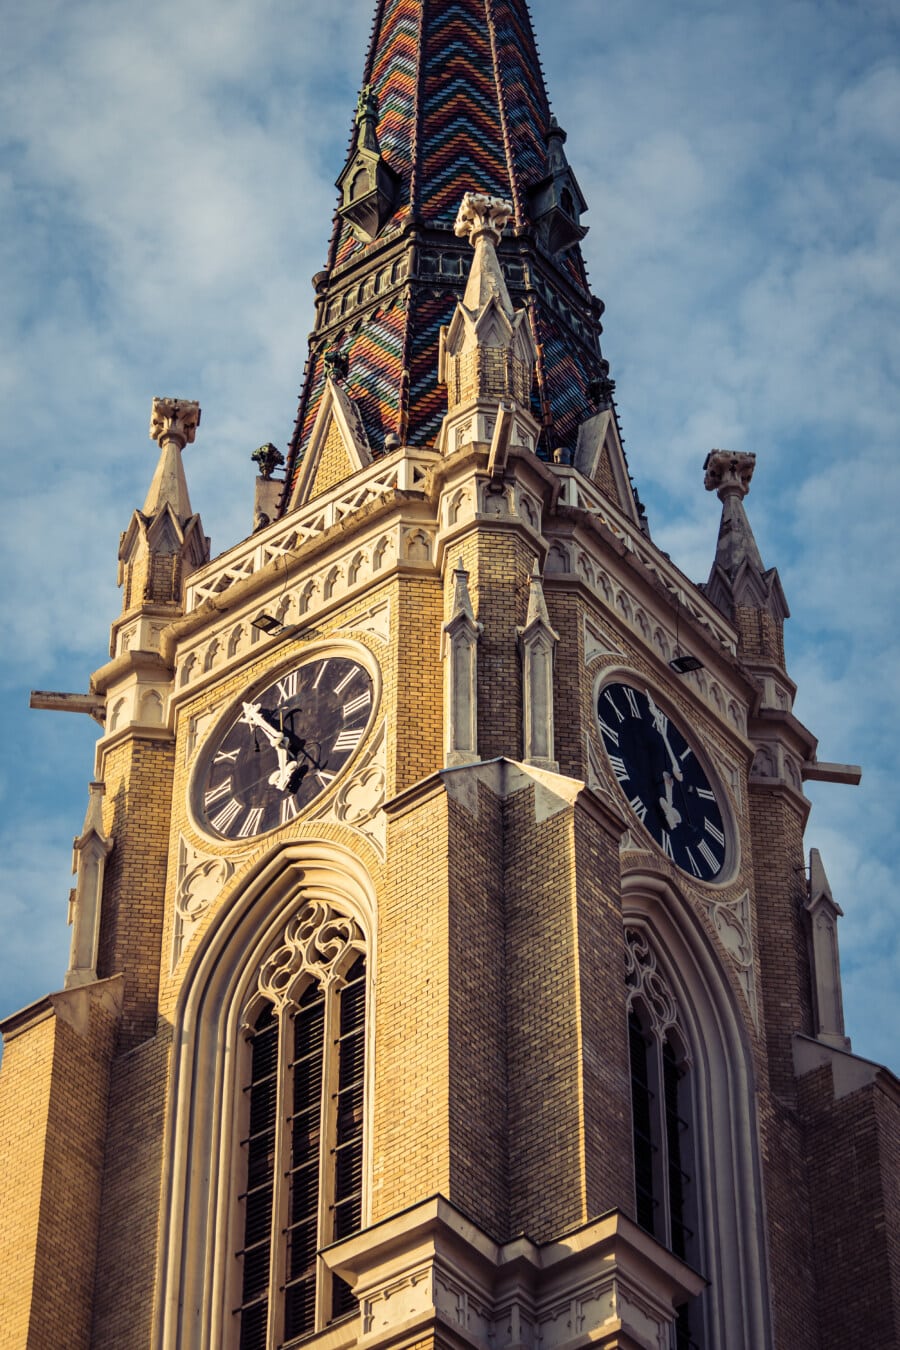 groteskowy gargulec, gotyk, wieża kościoła, zegar analogowy, cegły, budynek, fasada, Wieża, architektura, katedra